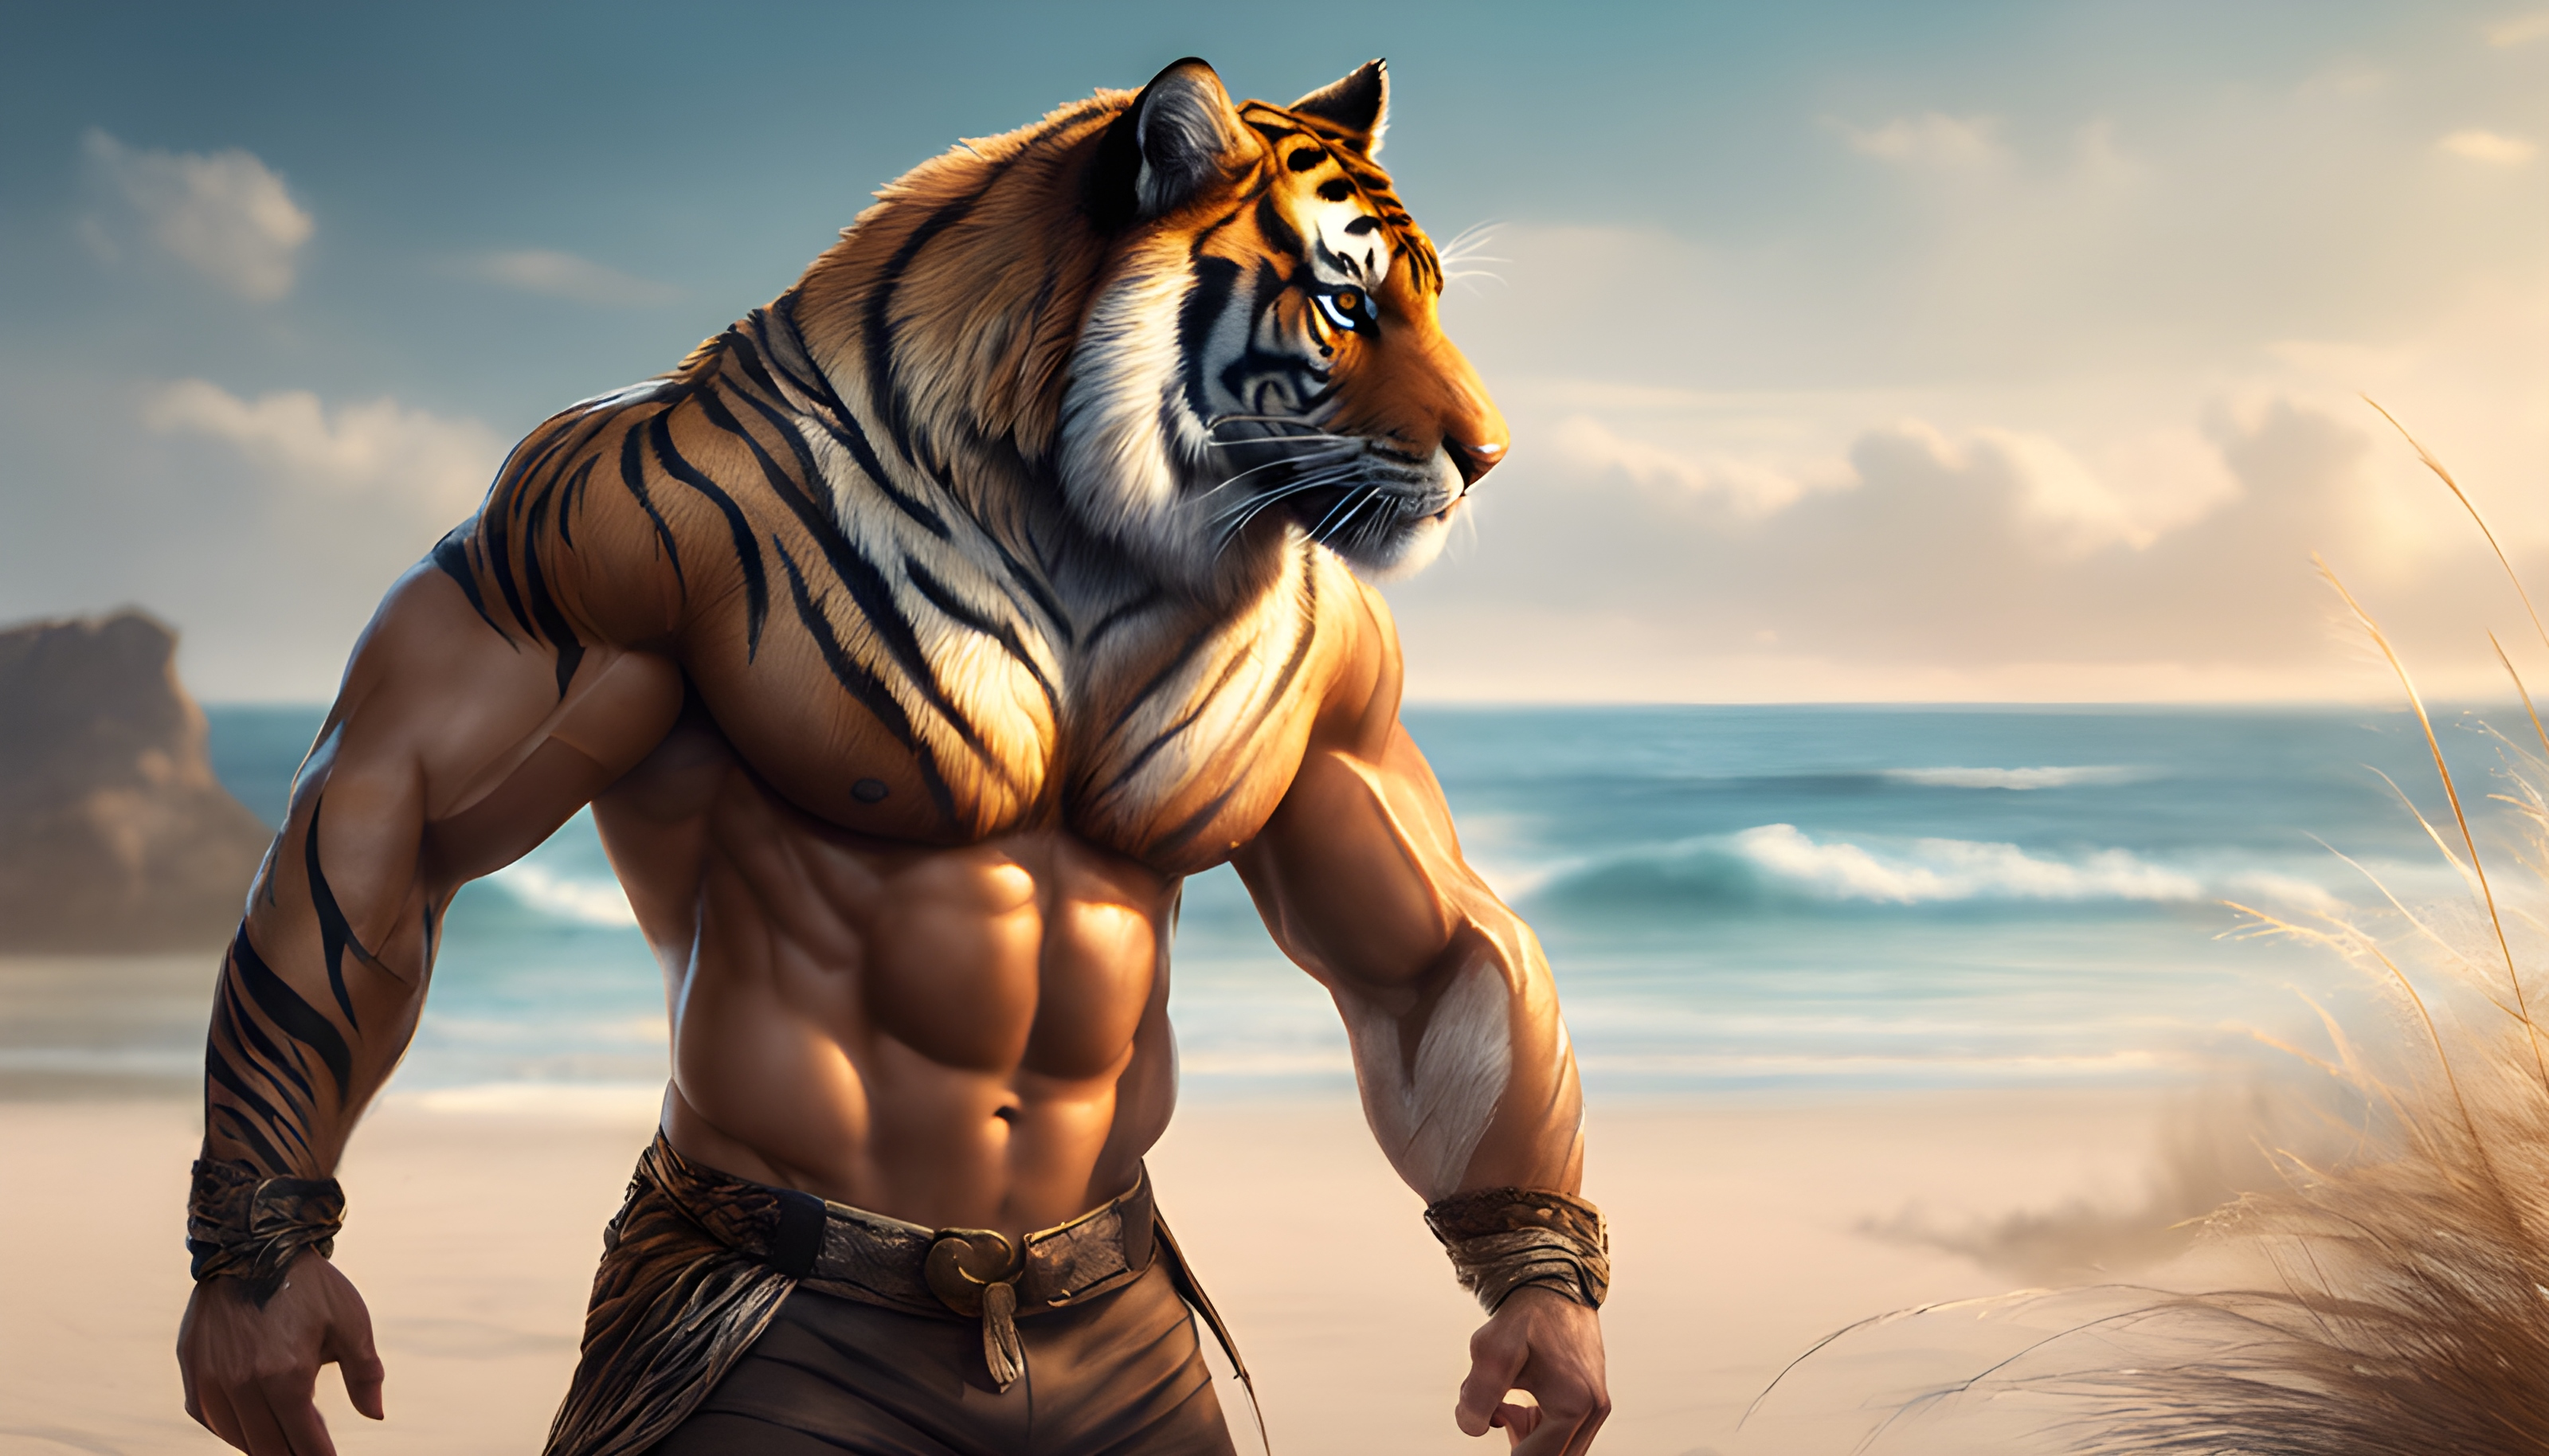 สร้างภาพ ผู้ชายมีรูปร่างเป็นเสือ มีกล้าม โพสท่าที่ชายหาด